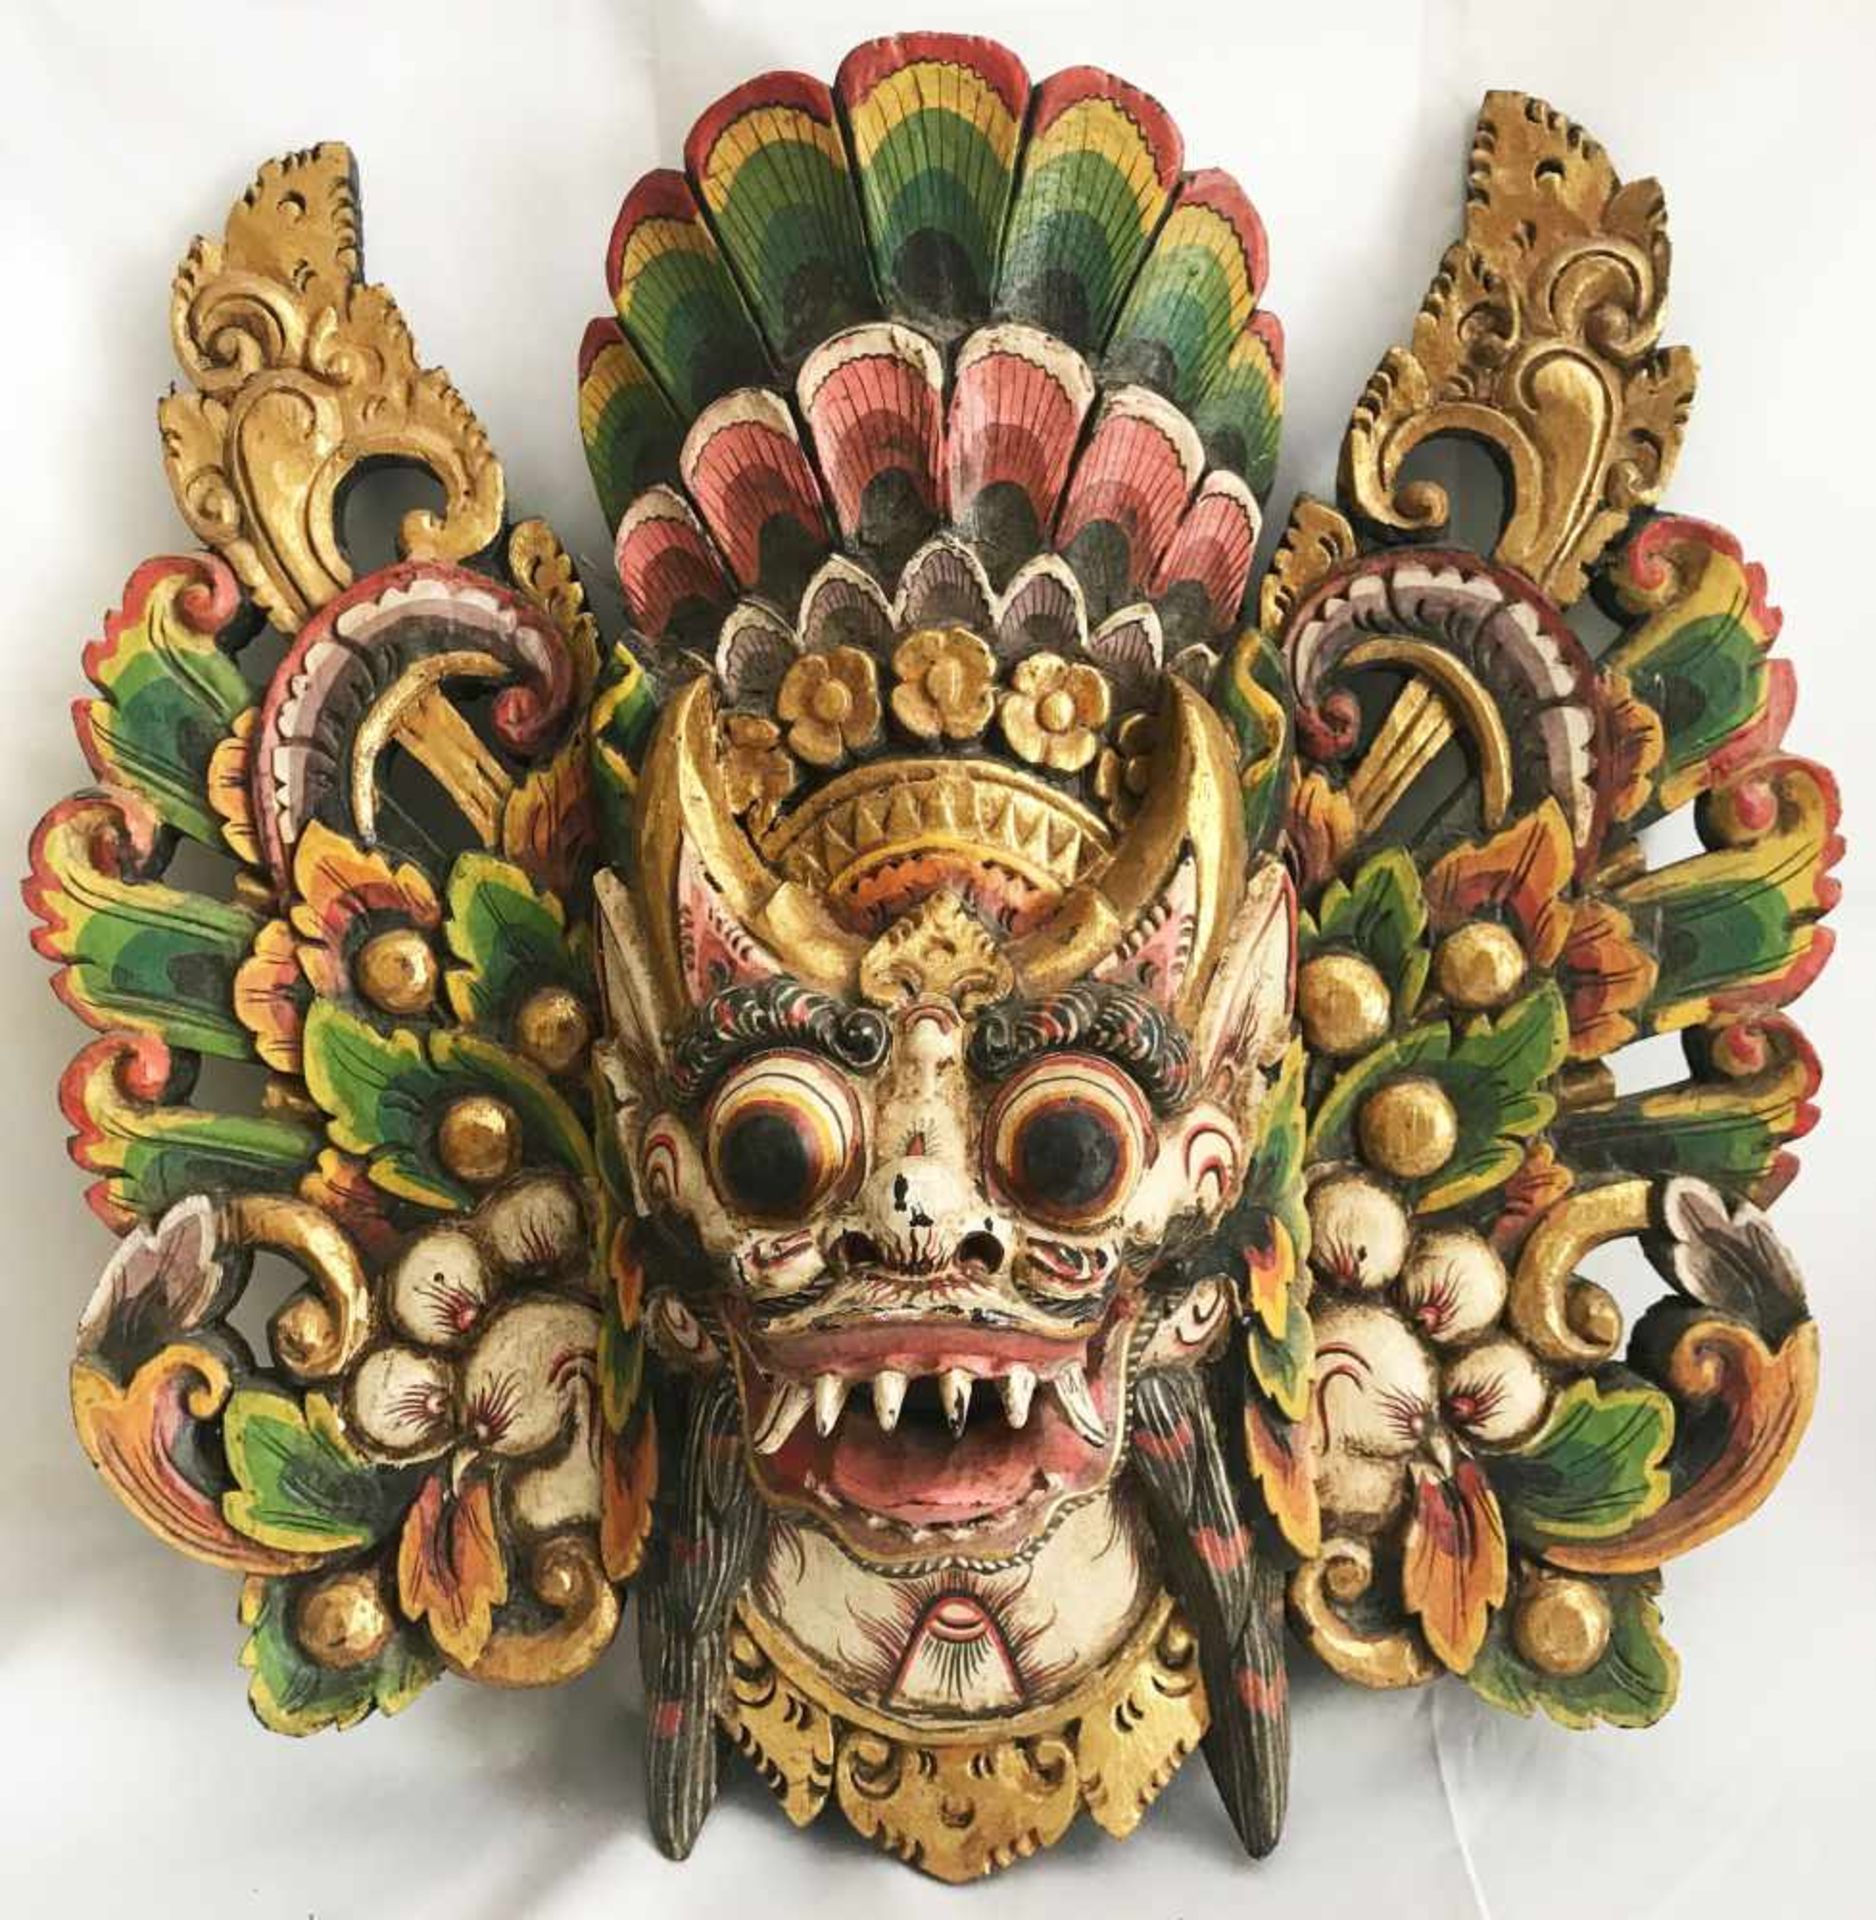 2 alte indonesische Masken, wohl Bali, Holz, farbig gefasst, Altersspuren, 52 x 54 cm sowie 22 x - Bild 3 aus 4